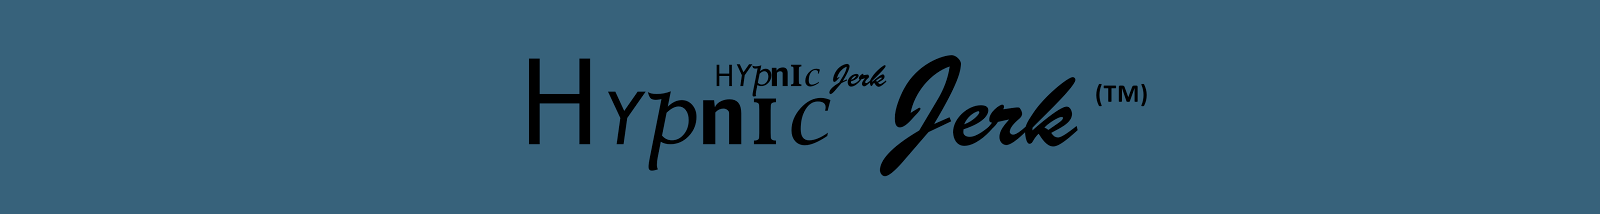 Hypnic Jerk